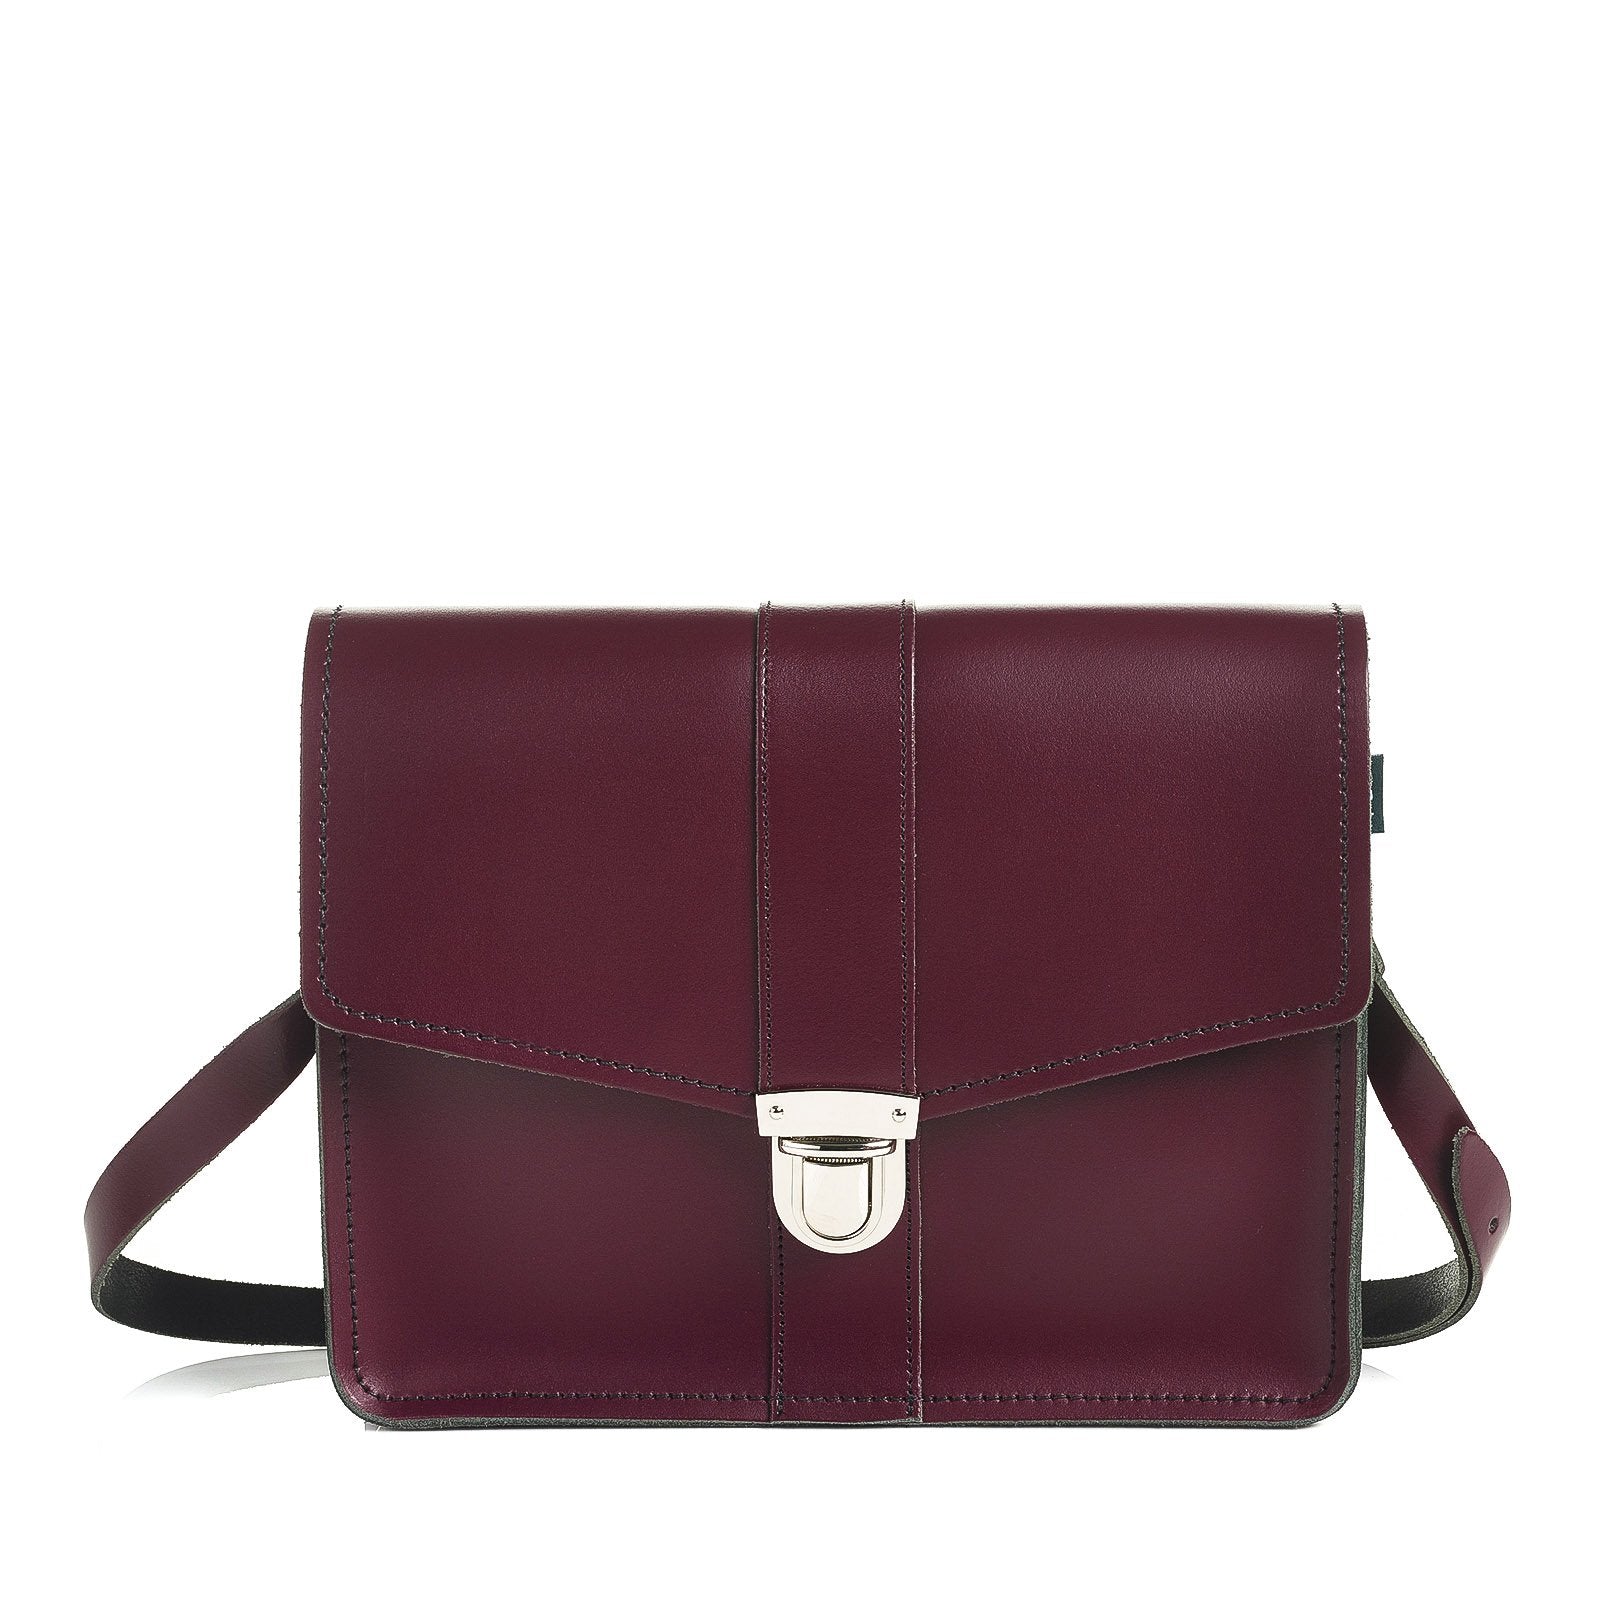 Leather Shoulder Bag - Marsala Red – Zatchels